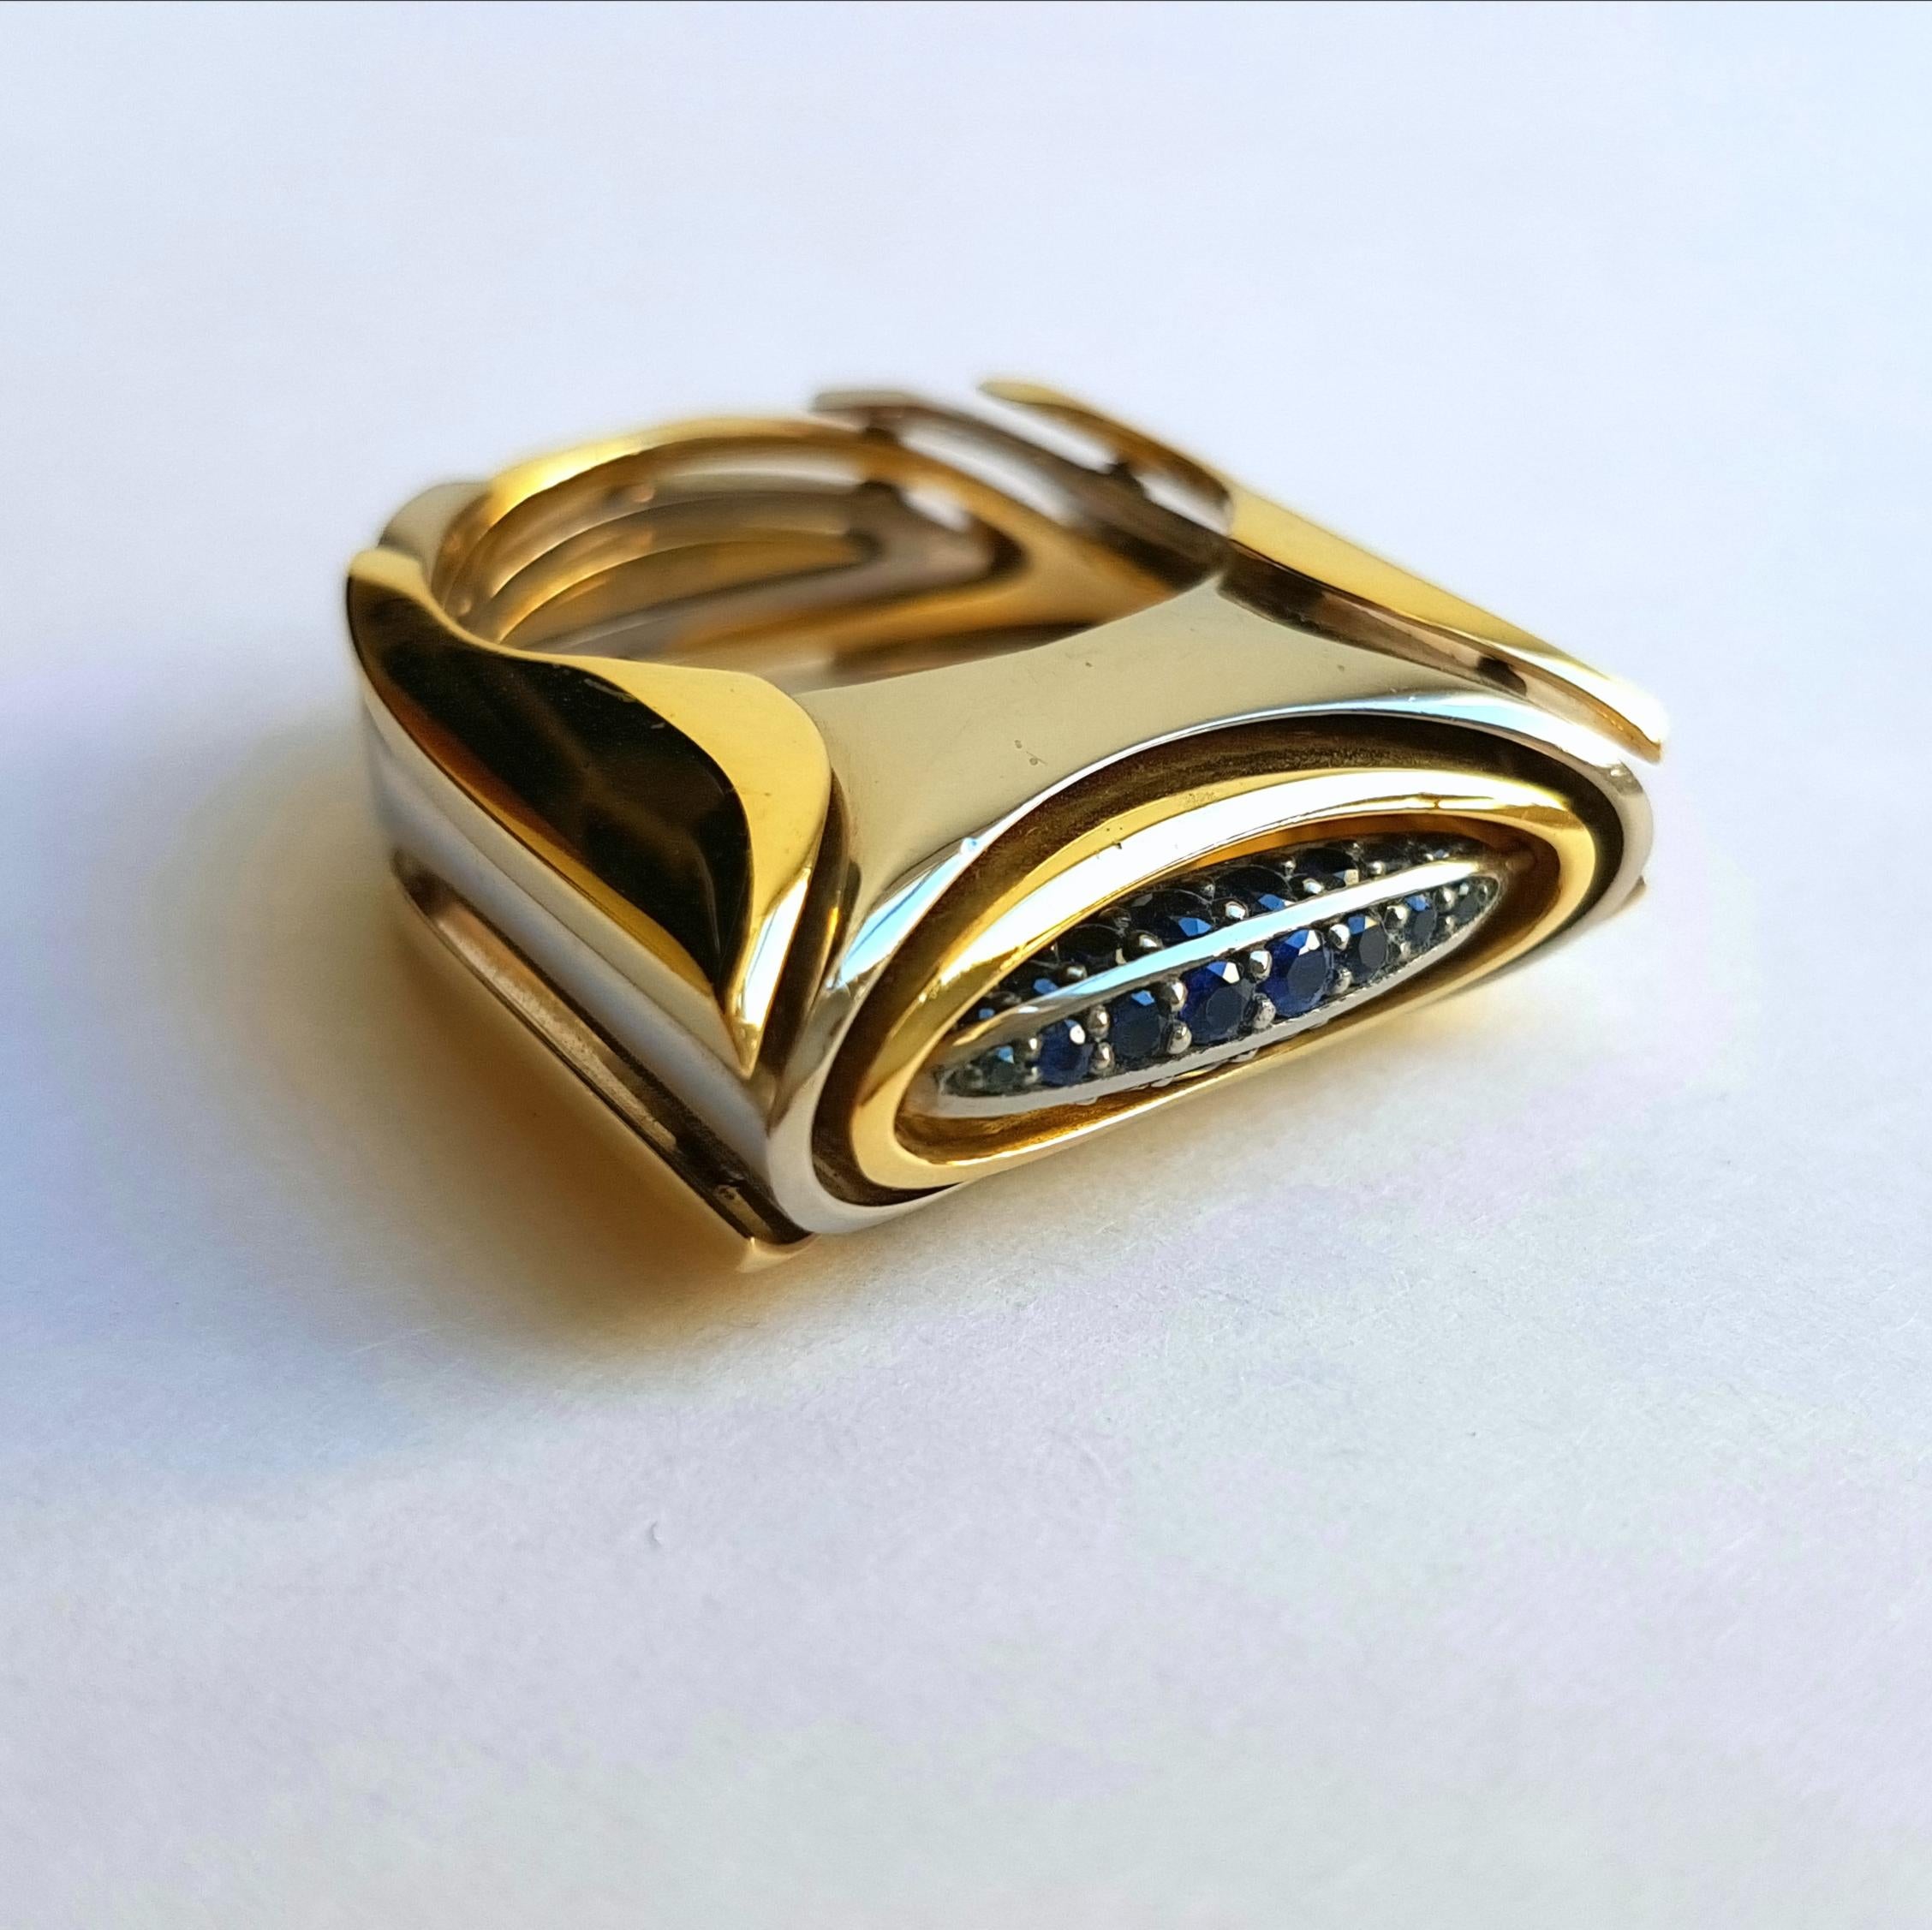 Sasonko Ring 
8 diamonds 0.11 carat total
32 sapphires 0.51 carat total
18 Karat White-Yellow Gold
Finger size: 
US 8 1/2
EU 18 1/2